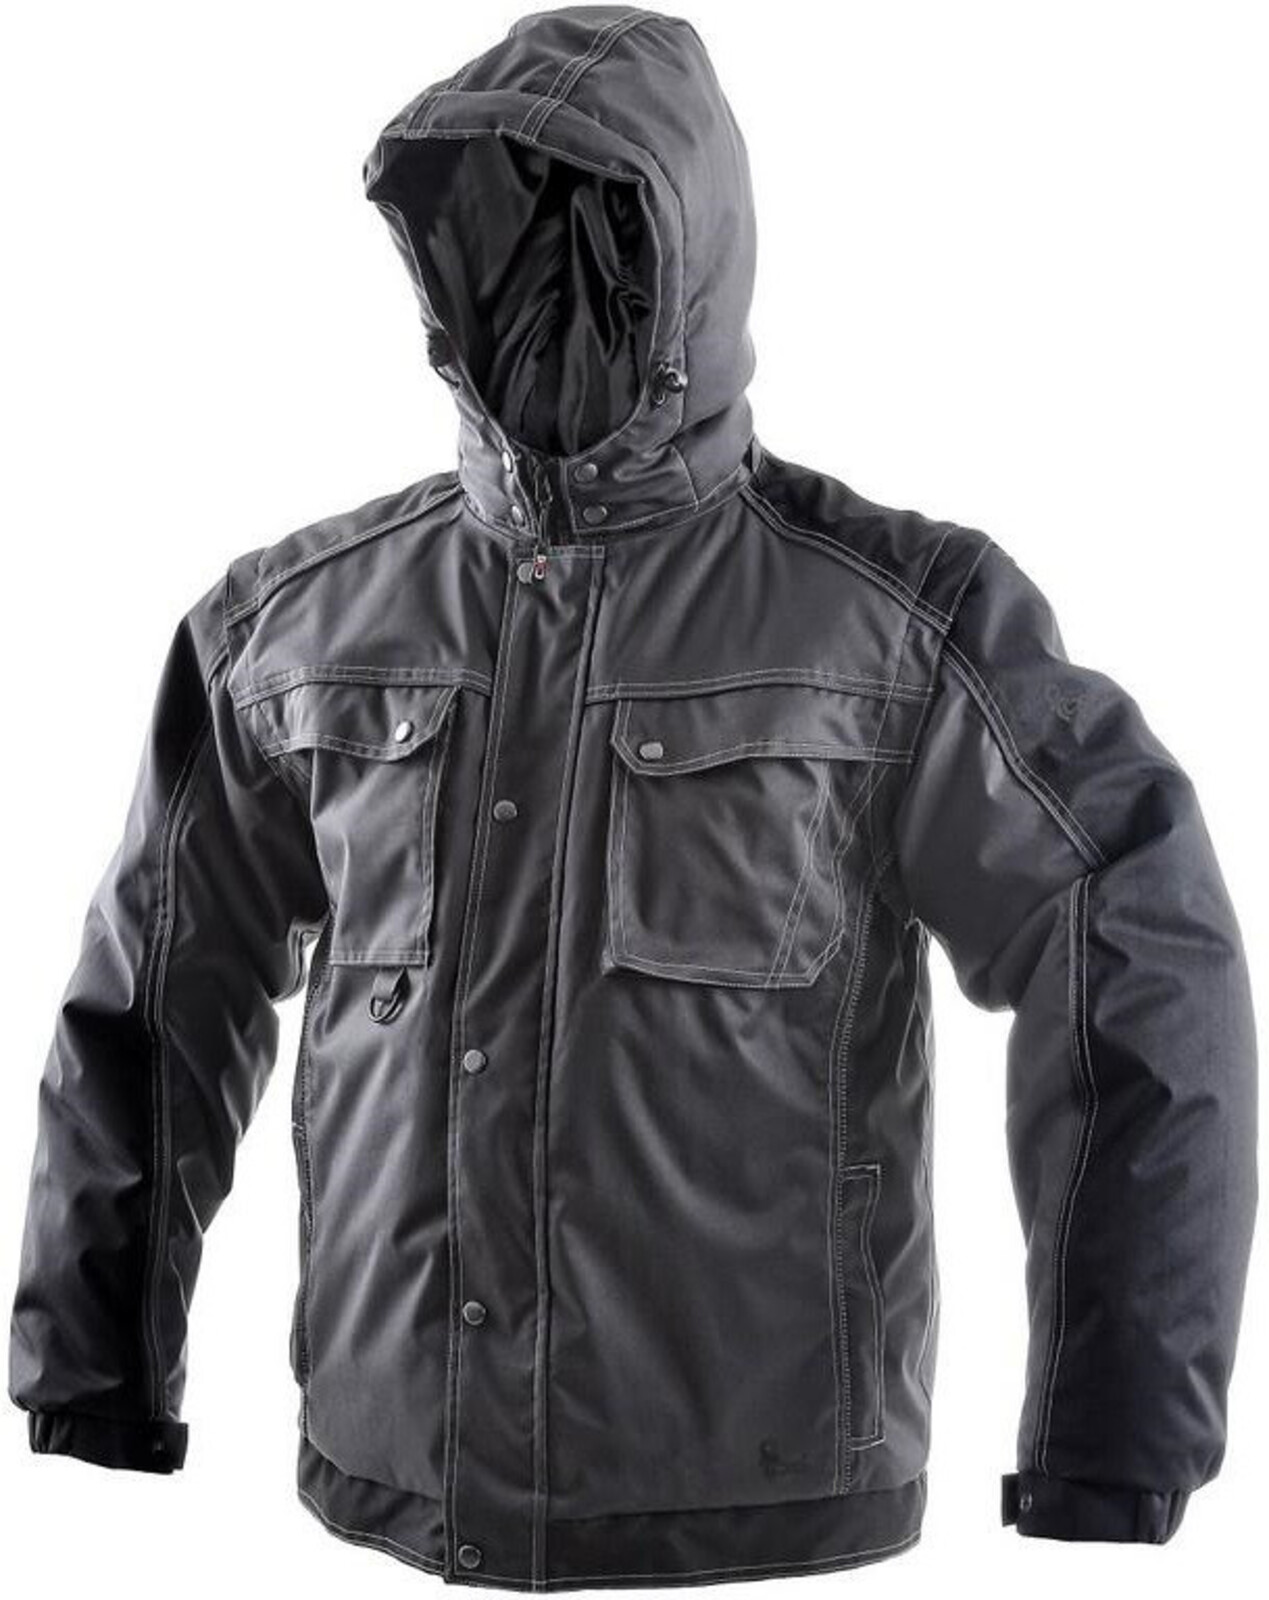 Pánska zimná bunda CXS Irvine 2v1 - veľkosť: M, farba: sivá/čierna